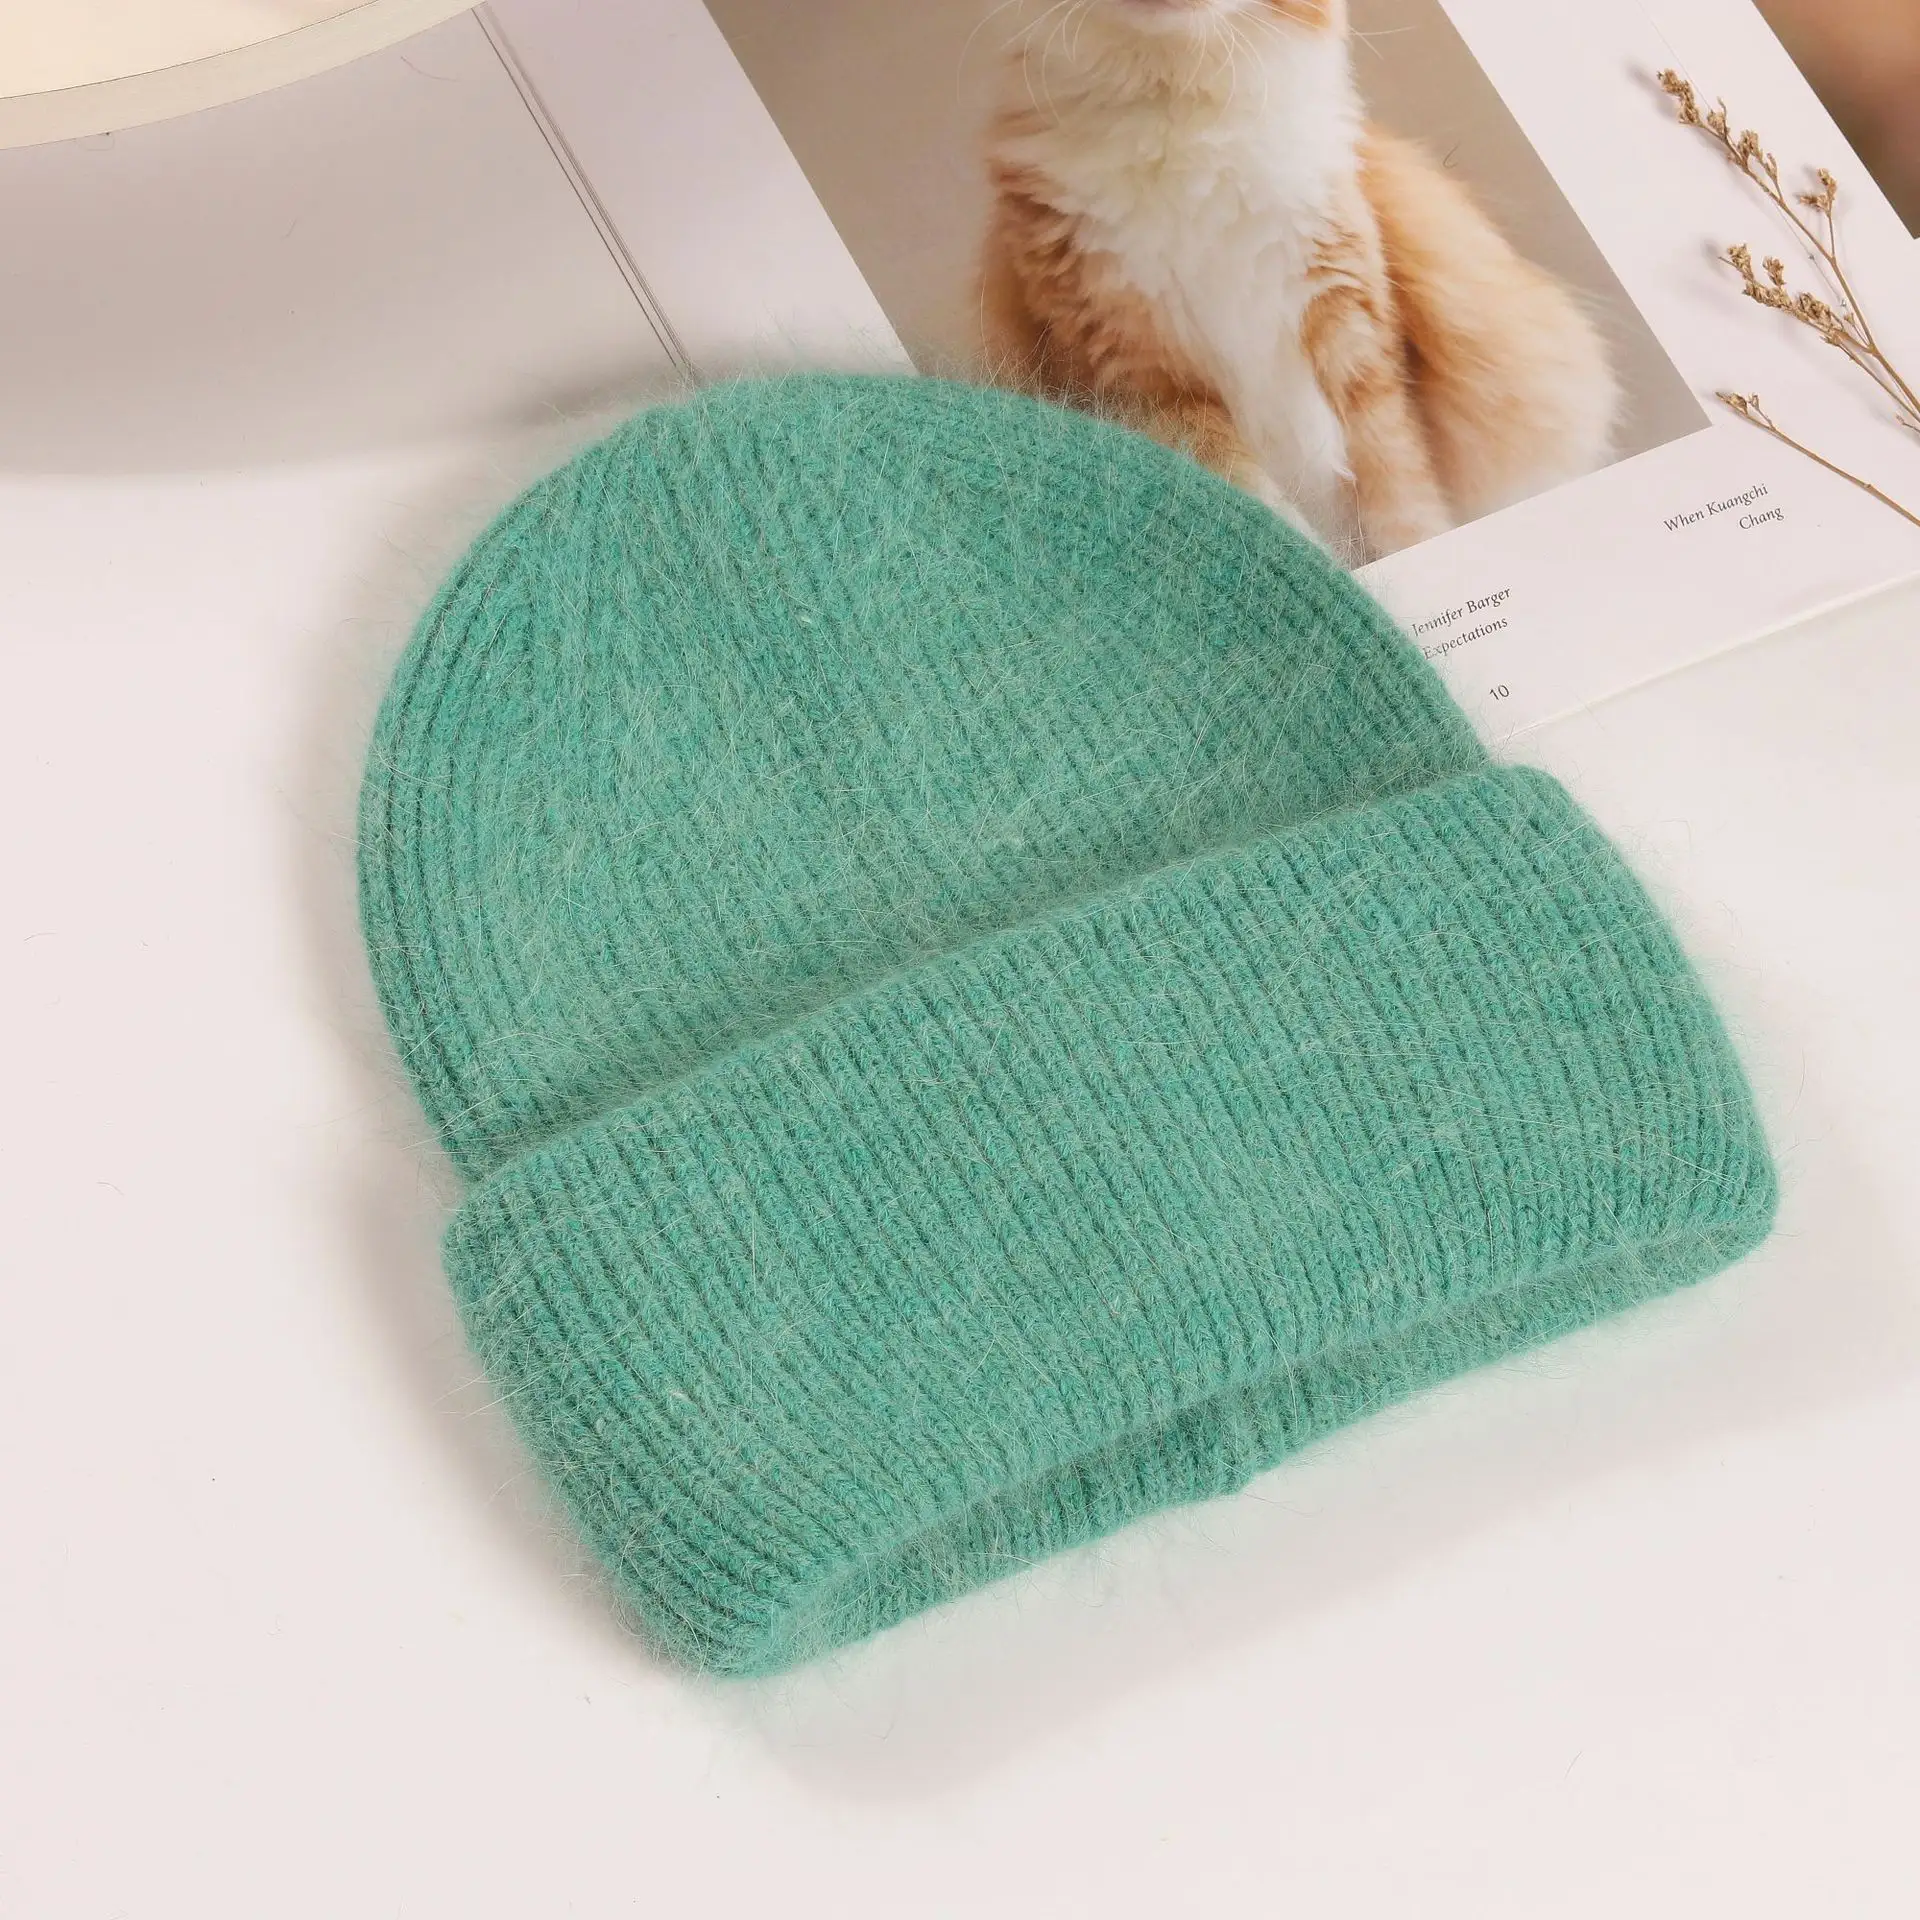 Crochet cachemire tricoté bonnets chapeau fabriqué tricot en vrac chapeaux d'hiver mignon angora machine pour hommes bonnet de laine